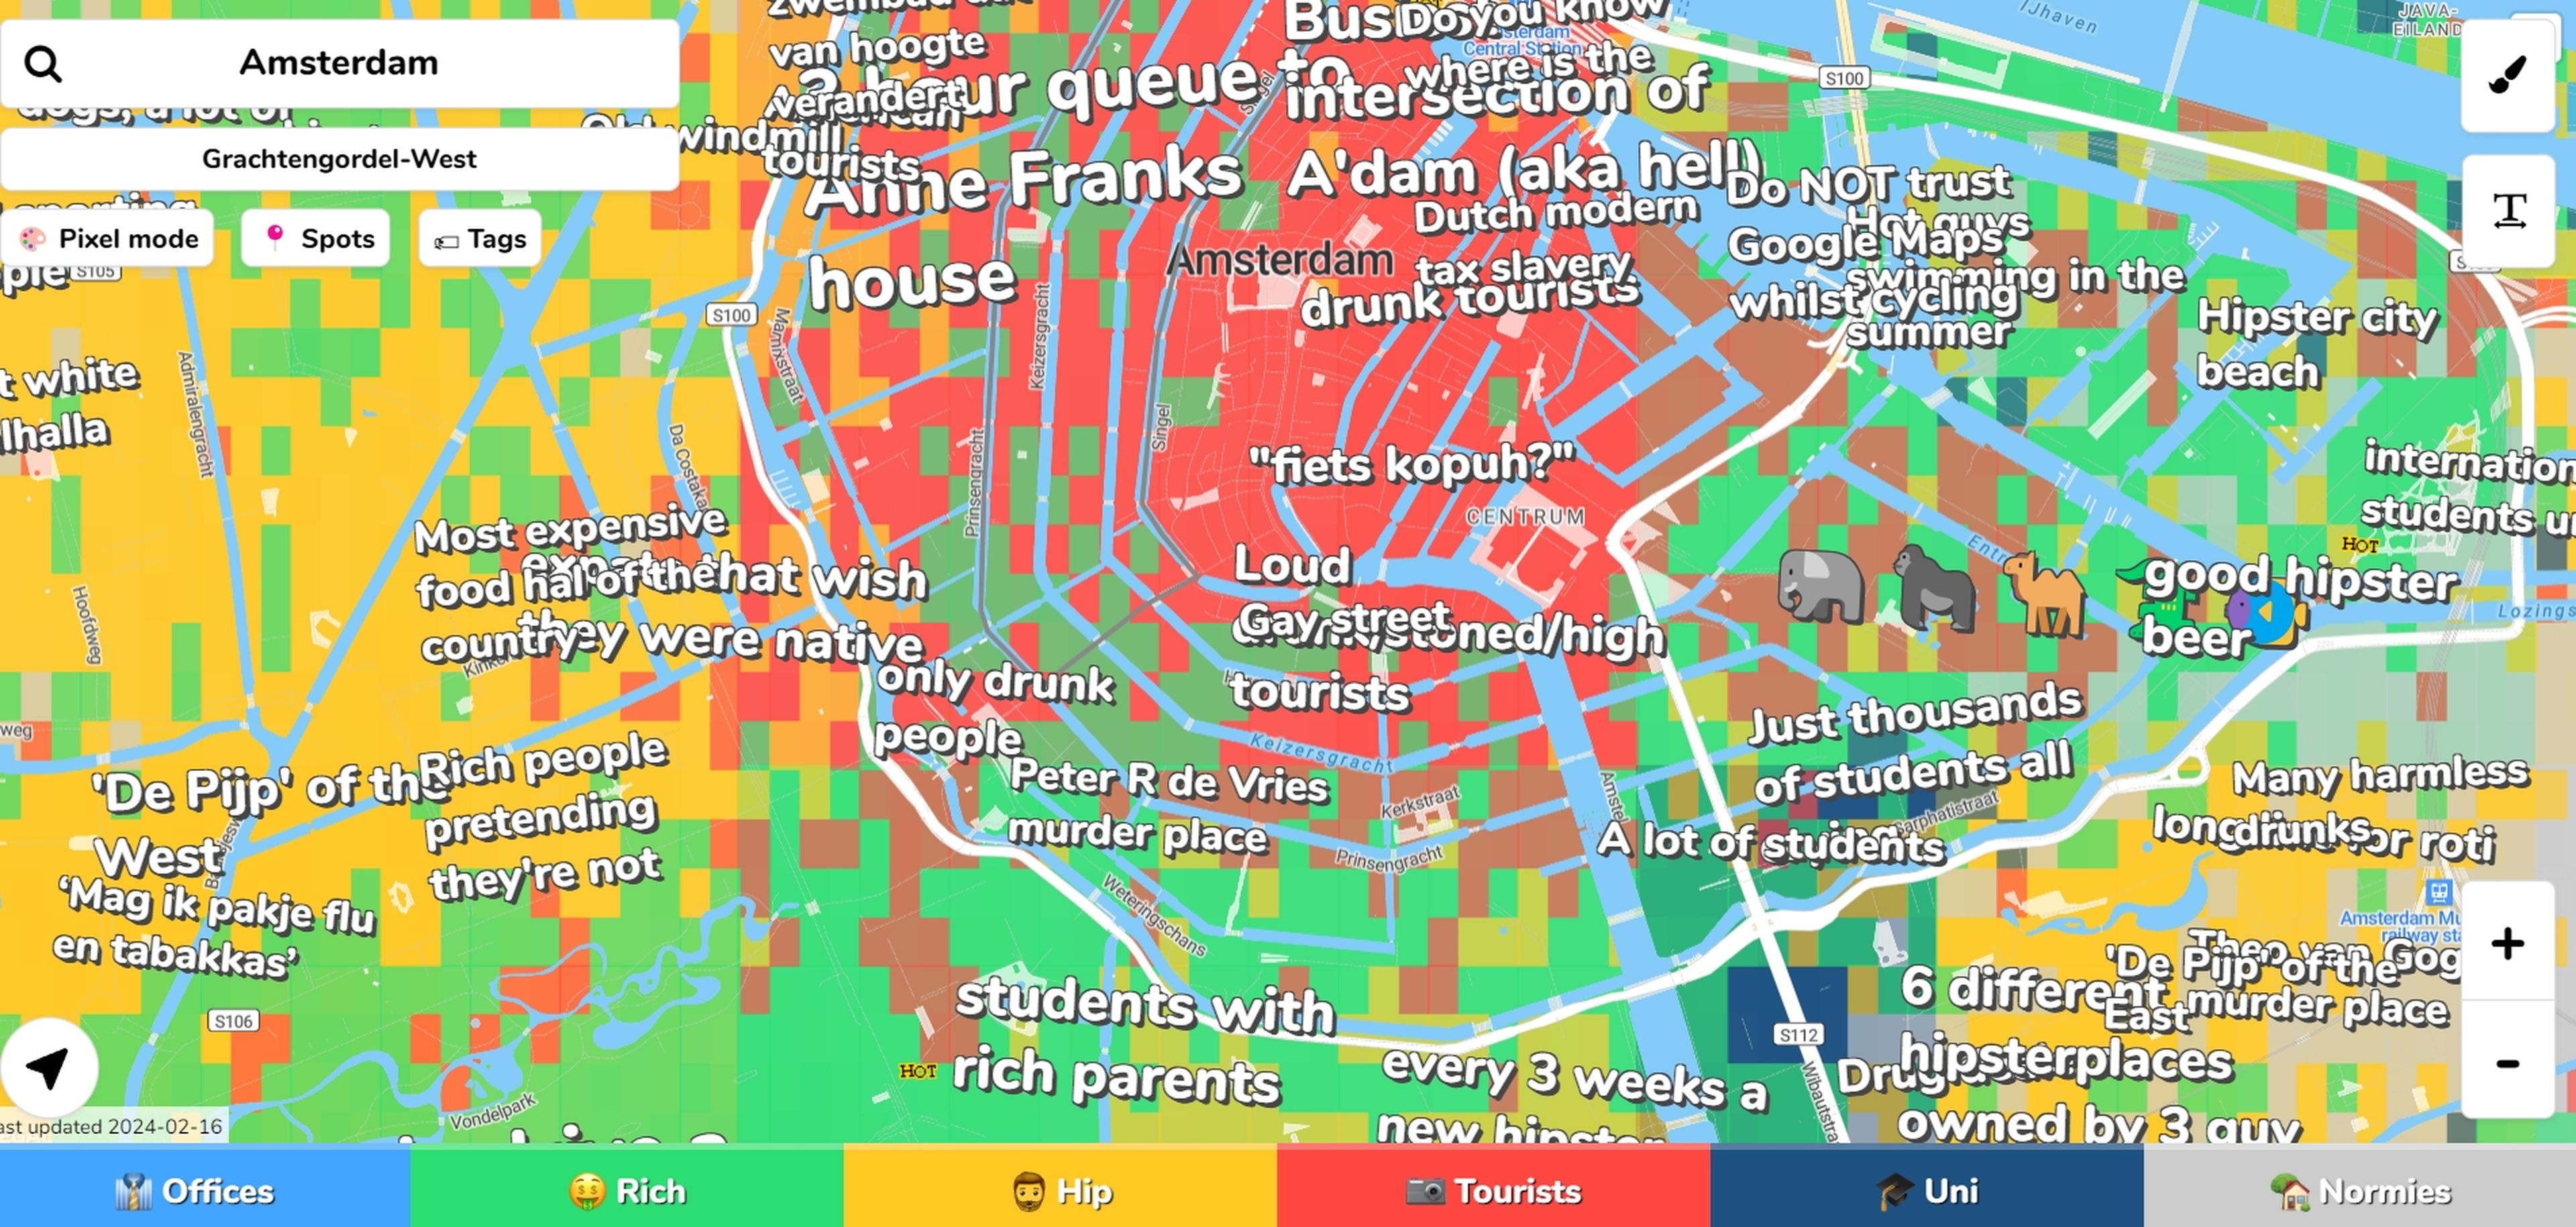 Hoodmaps barrios y ciudades